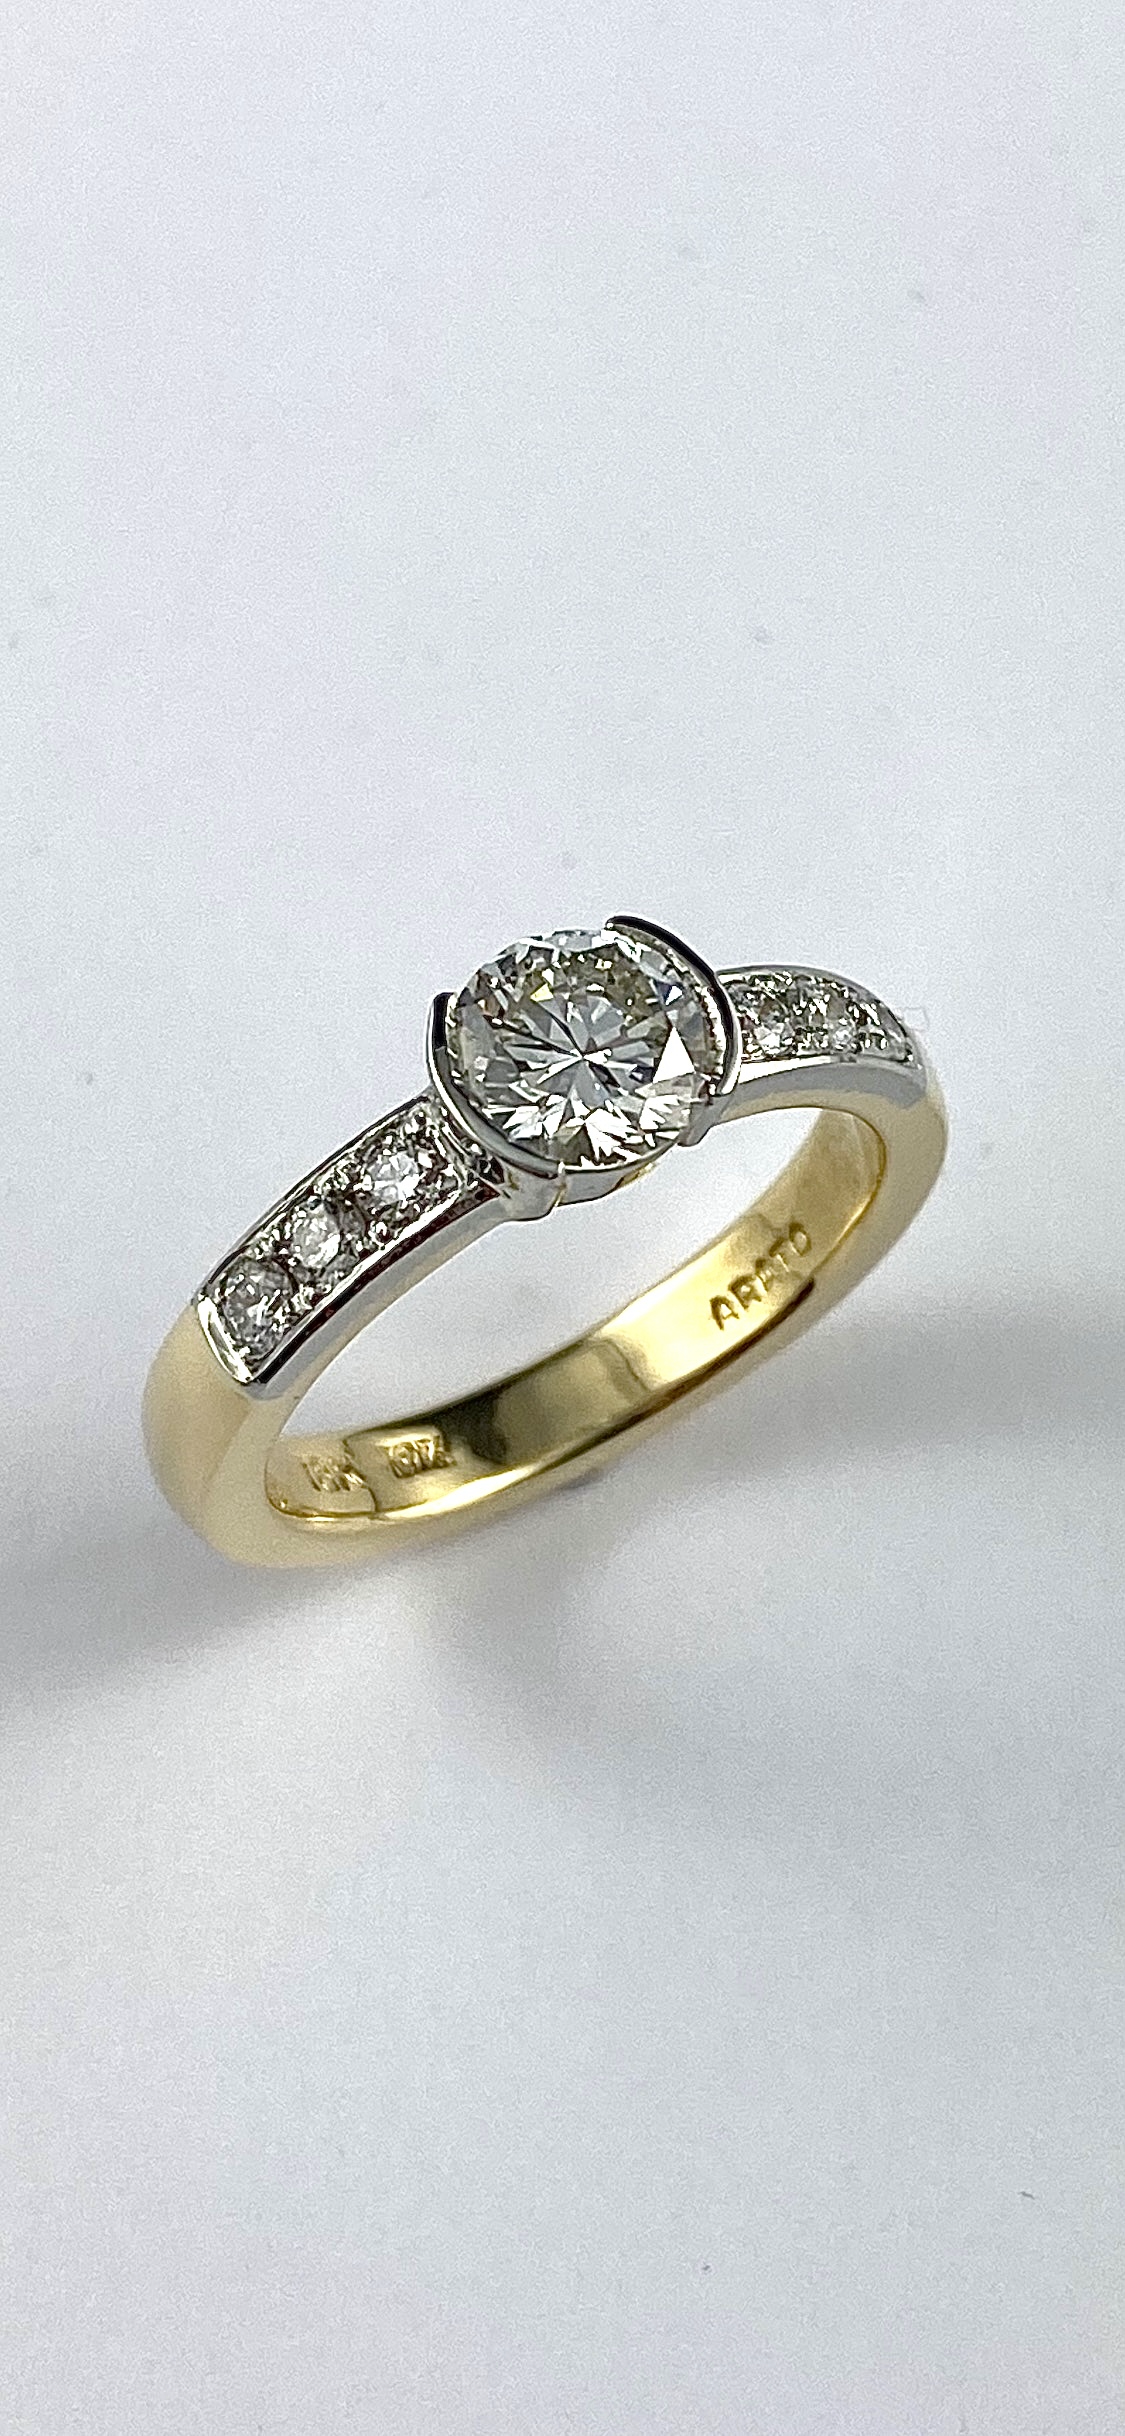 19K White Gold Tsavorite Garnet Diamond Ring